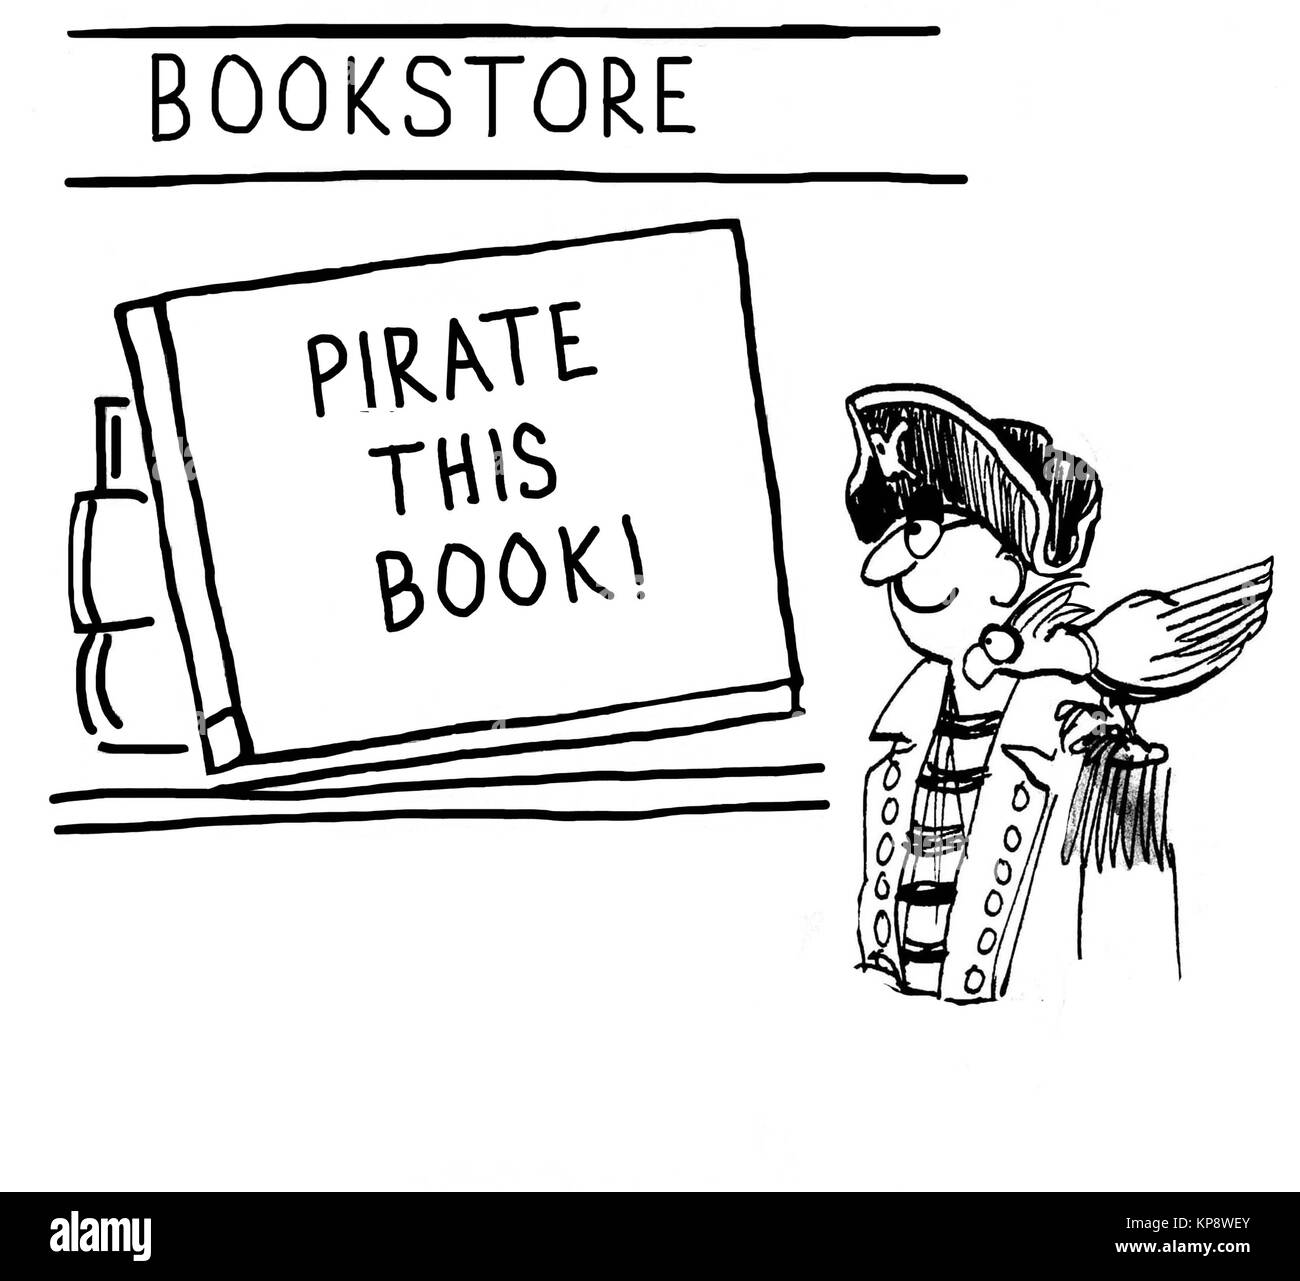 Le pirate est excité de voir un encouragement à "pirate ce livre'. Banque D'Images